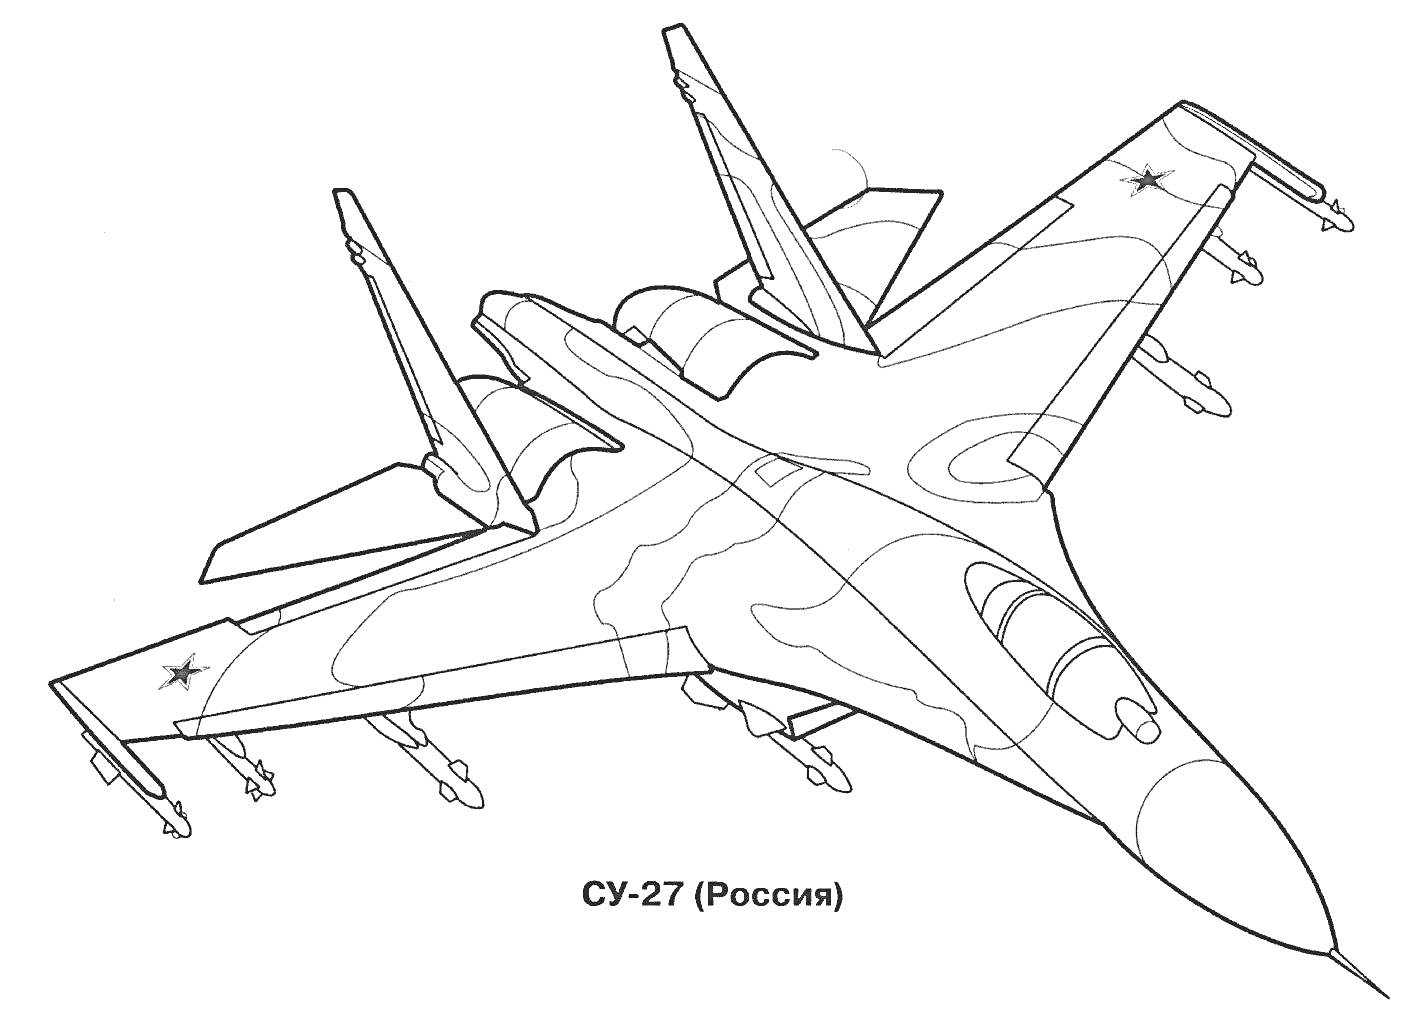 Раскраска Раскраска военного самолета СУ-27 с видимыми элементами, включая крылья, хвост, кабину, шасси, ракеты, с надписью 